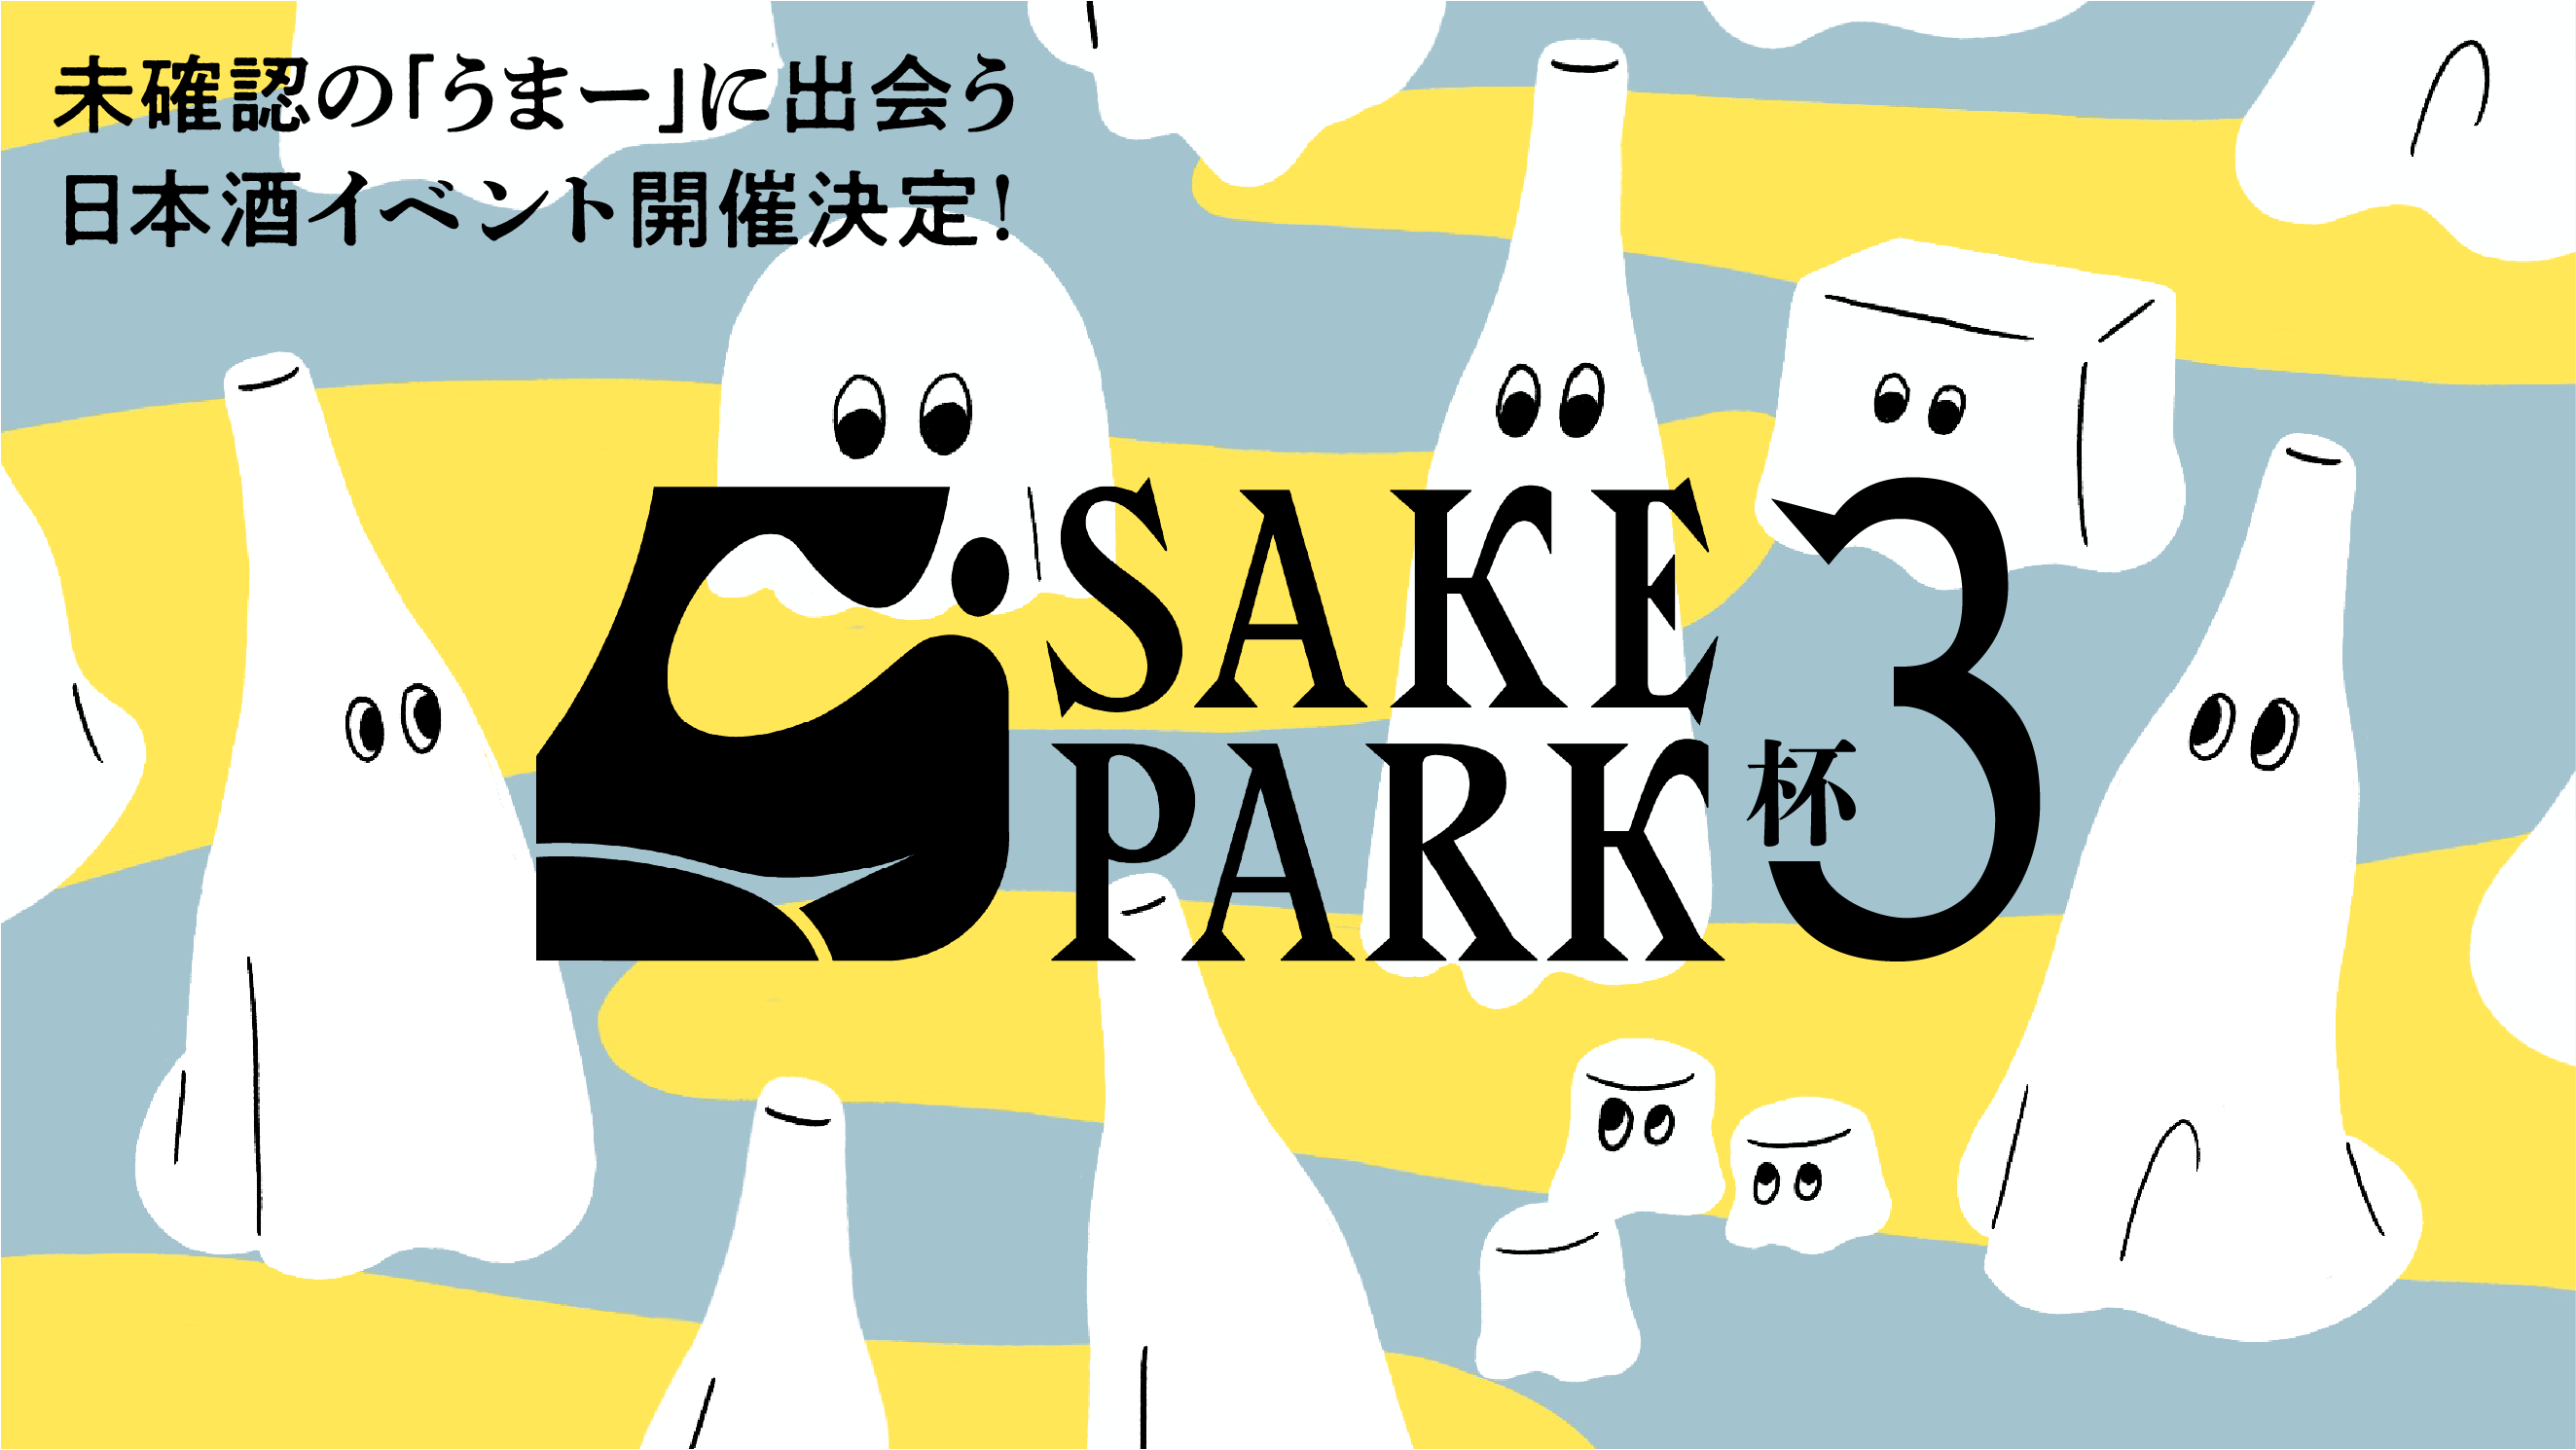 sake park